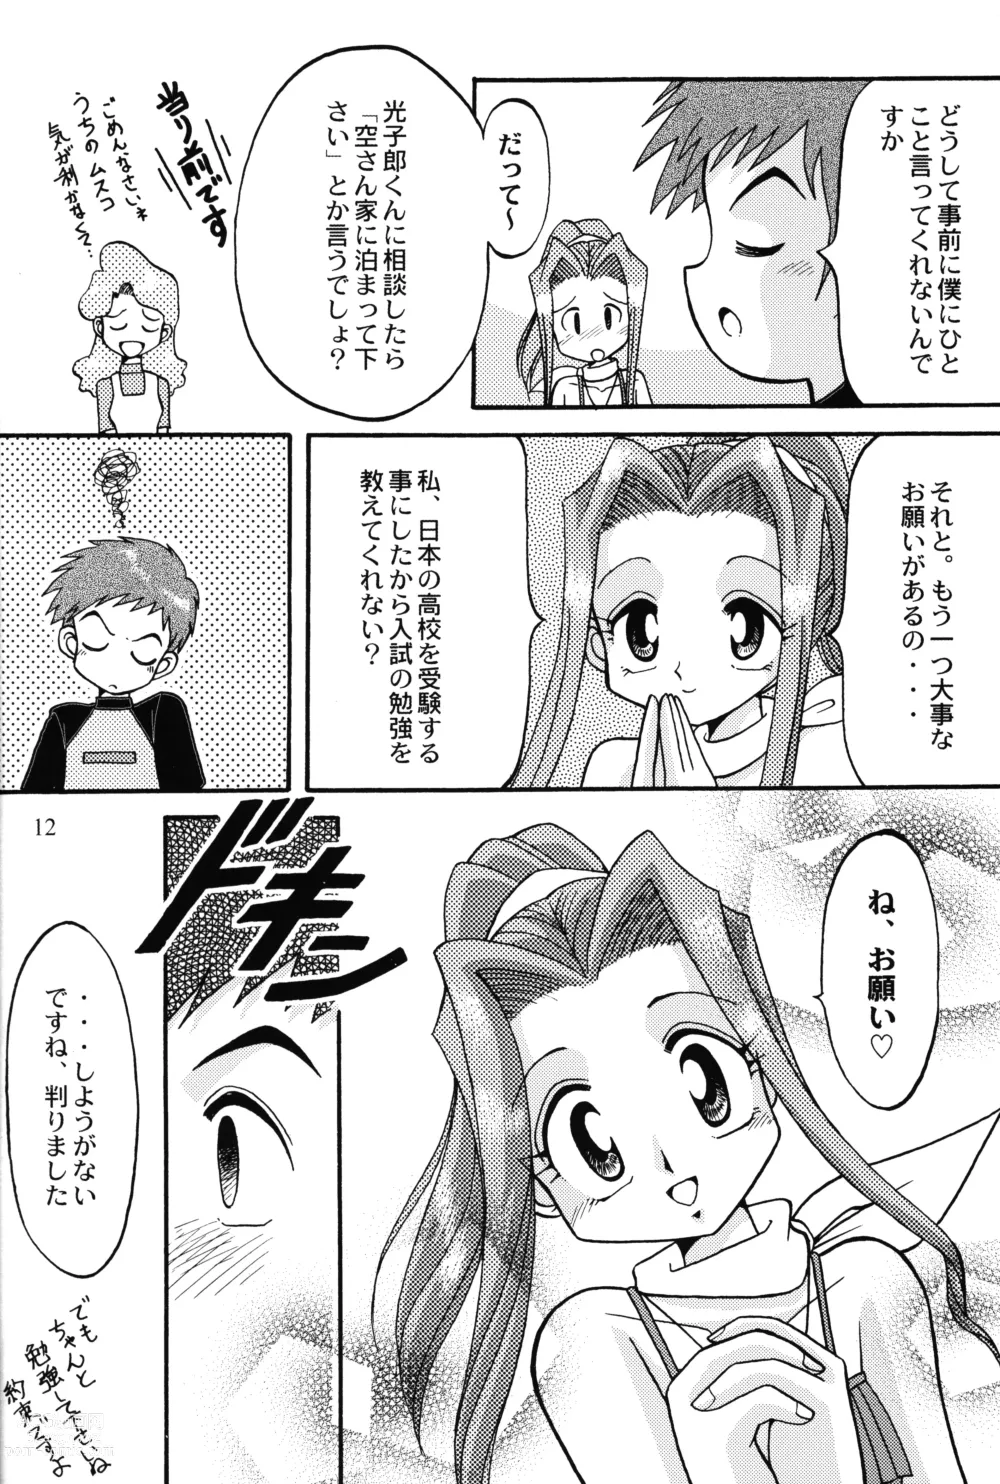 Page 11 of doujinshi Sora Mimi Hour 4